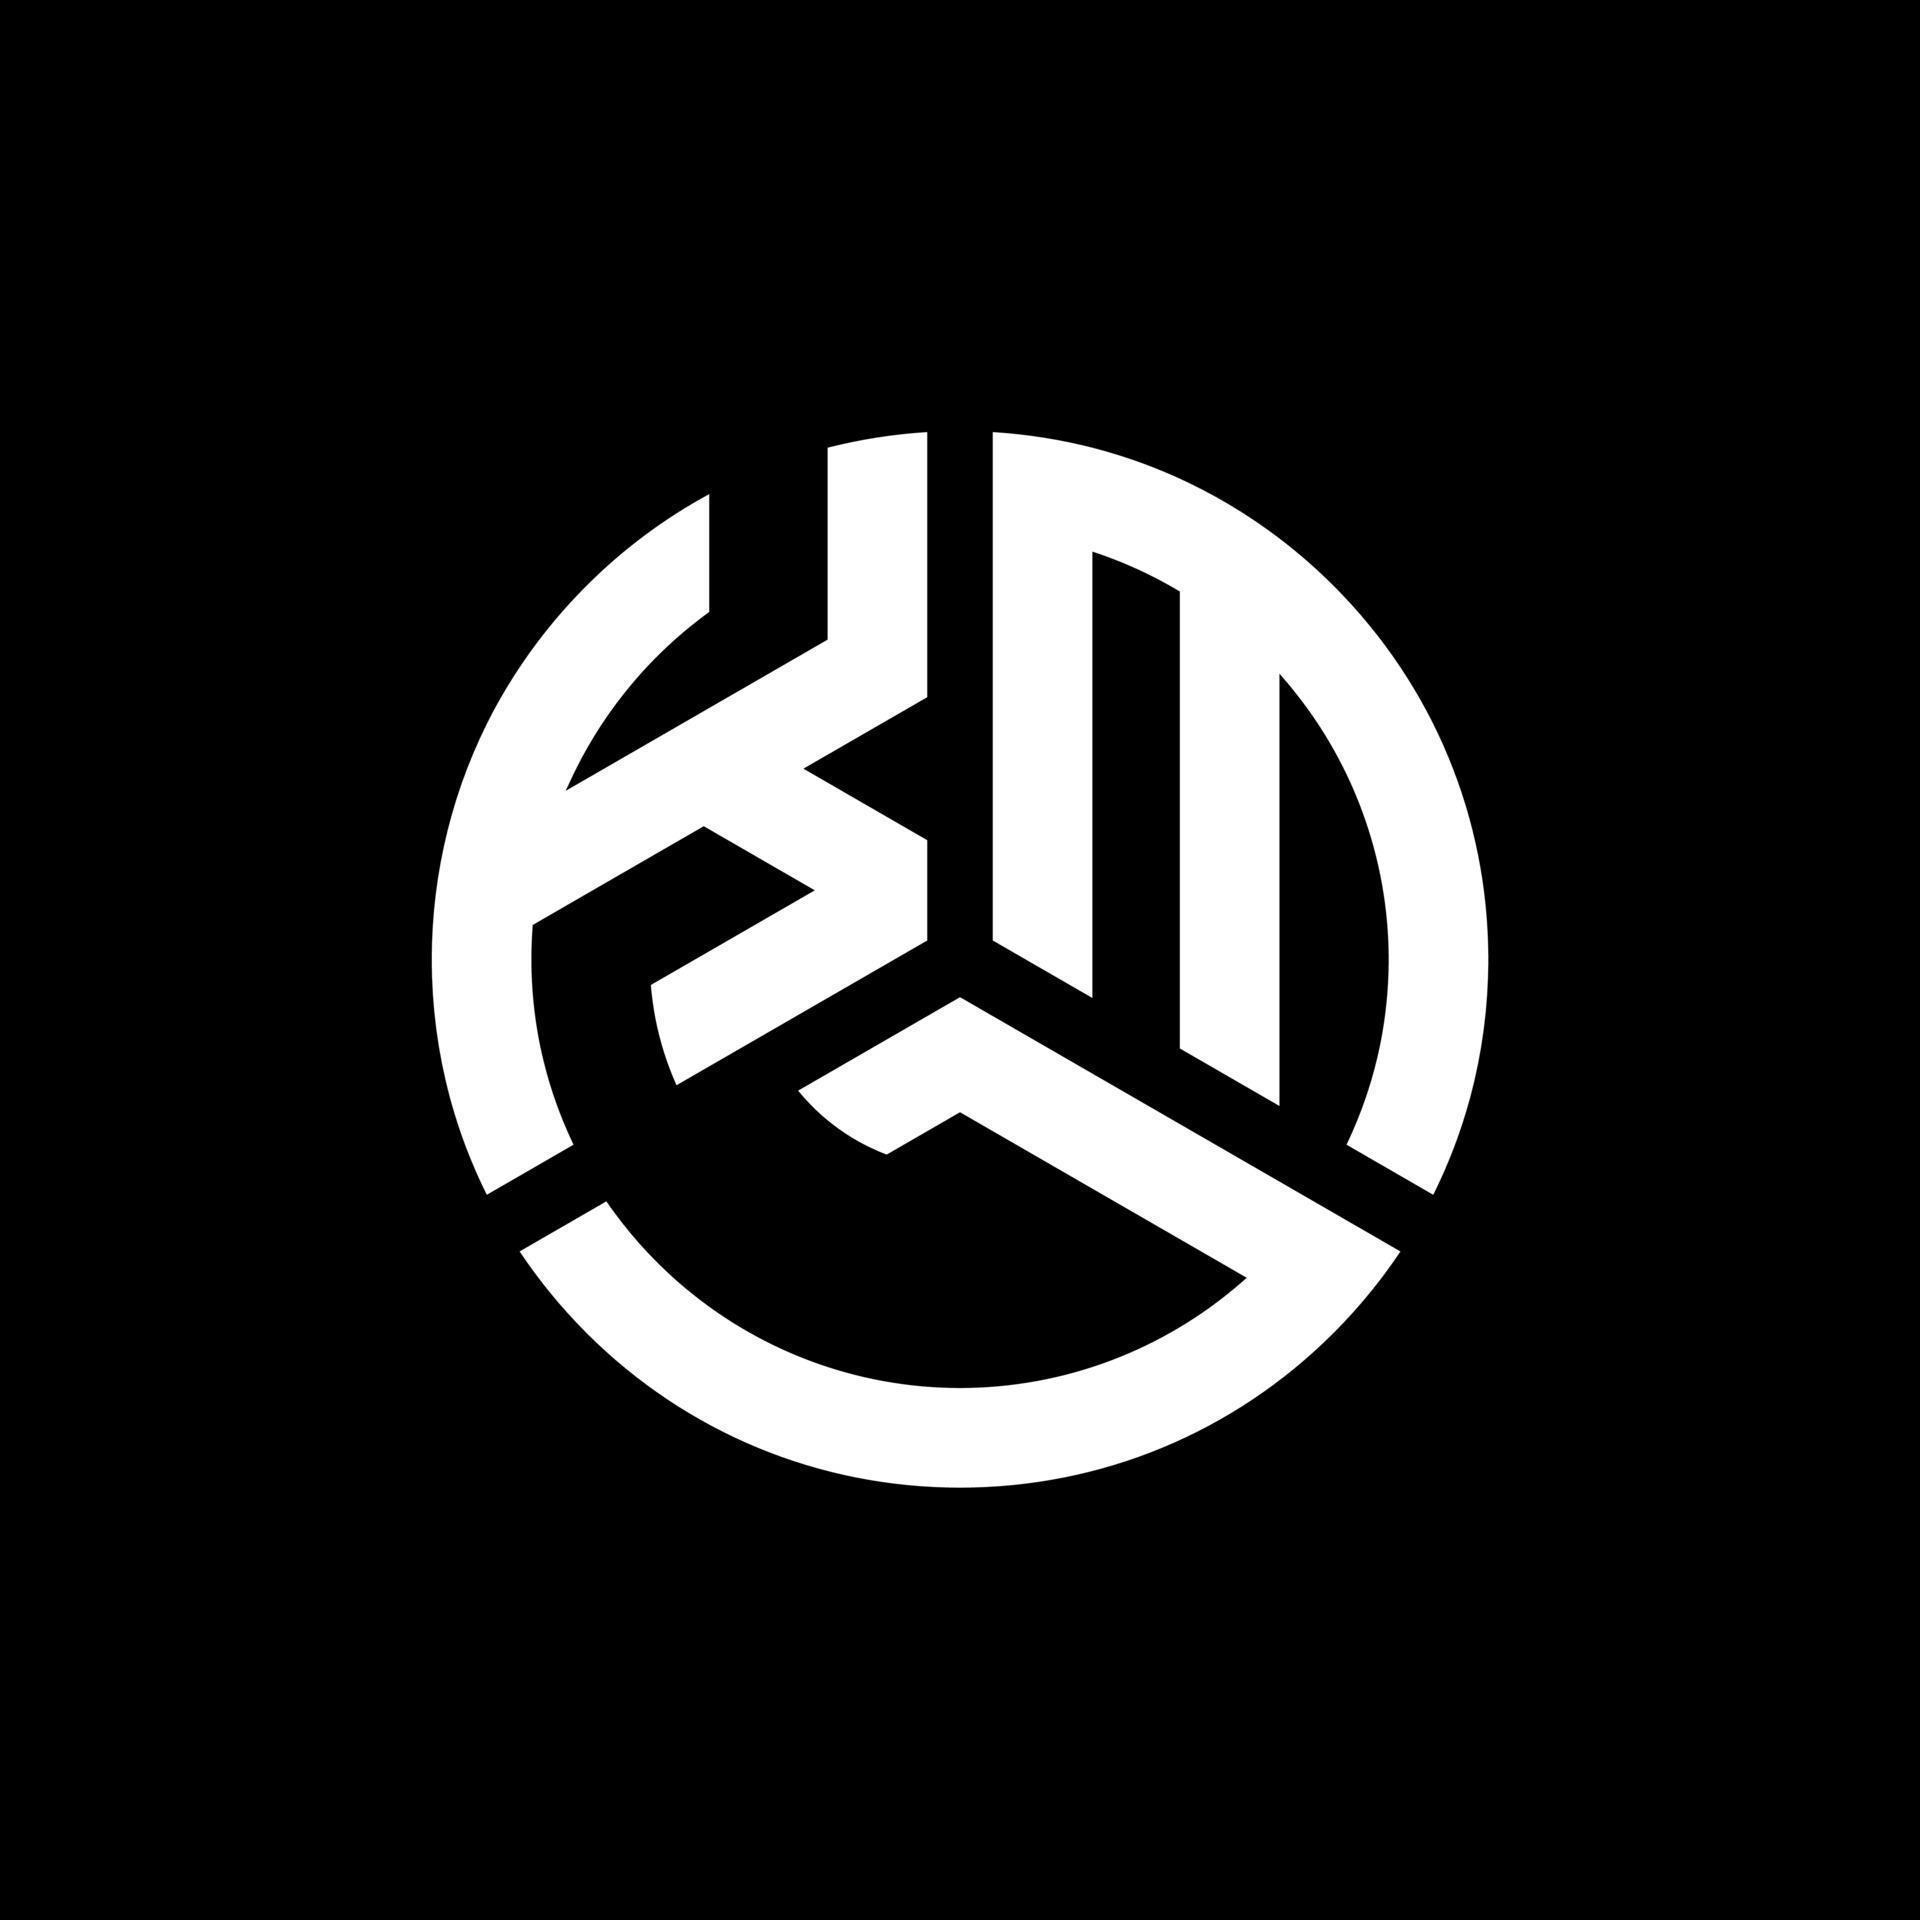 création de logo de lettre kml sur fond noir. concept de logo de lettre initiales créatives kml. conception de lettre kml. vecteur